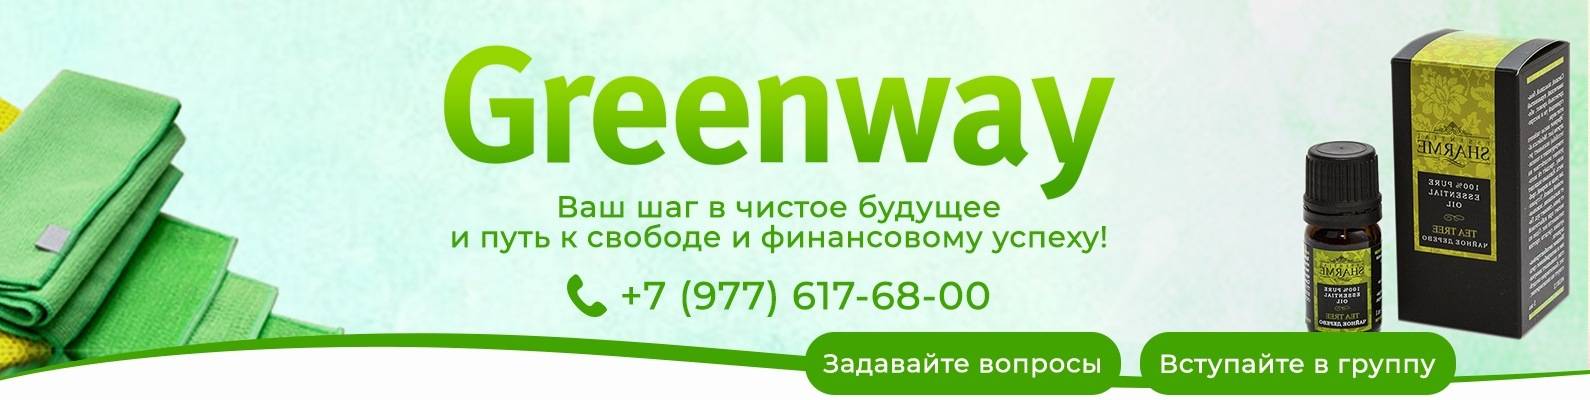 Интернет-проект greenway - командный сайт сетевиков / обзор и отзывы